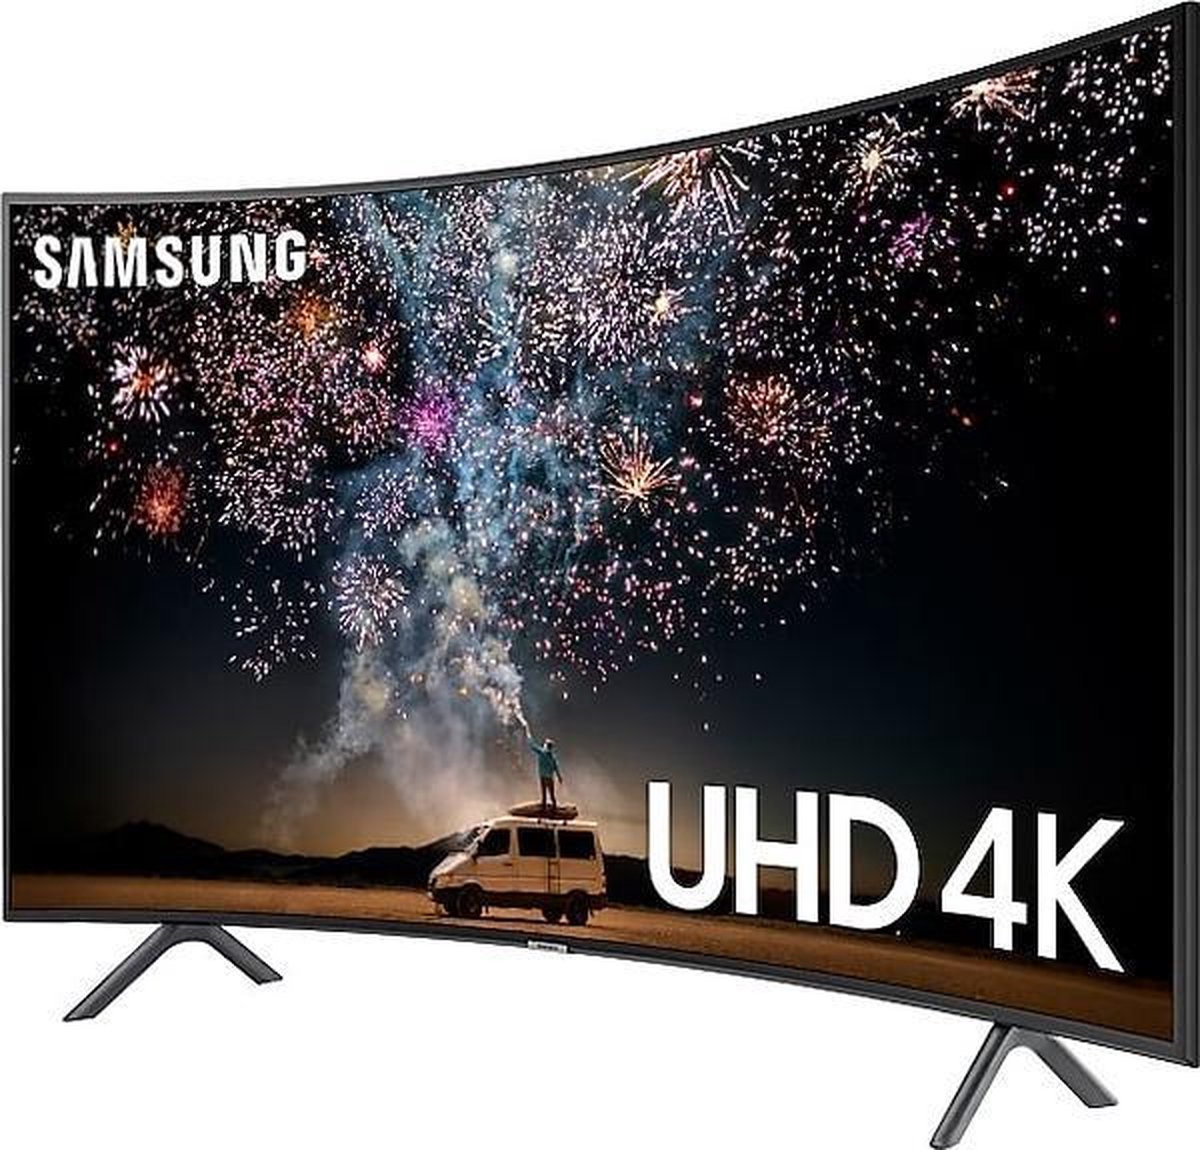 36+ Samsung 138 cm 4k uhd led tv hdr smart bluetooth information